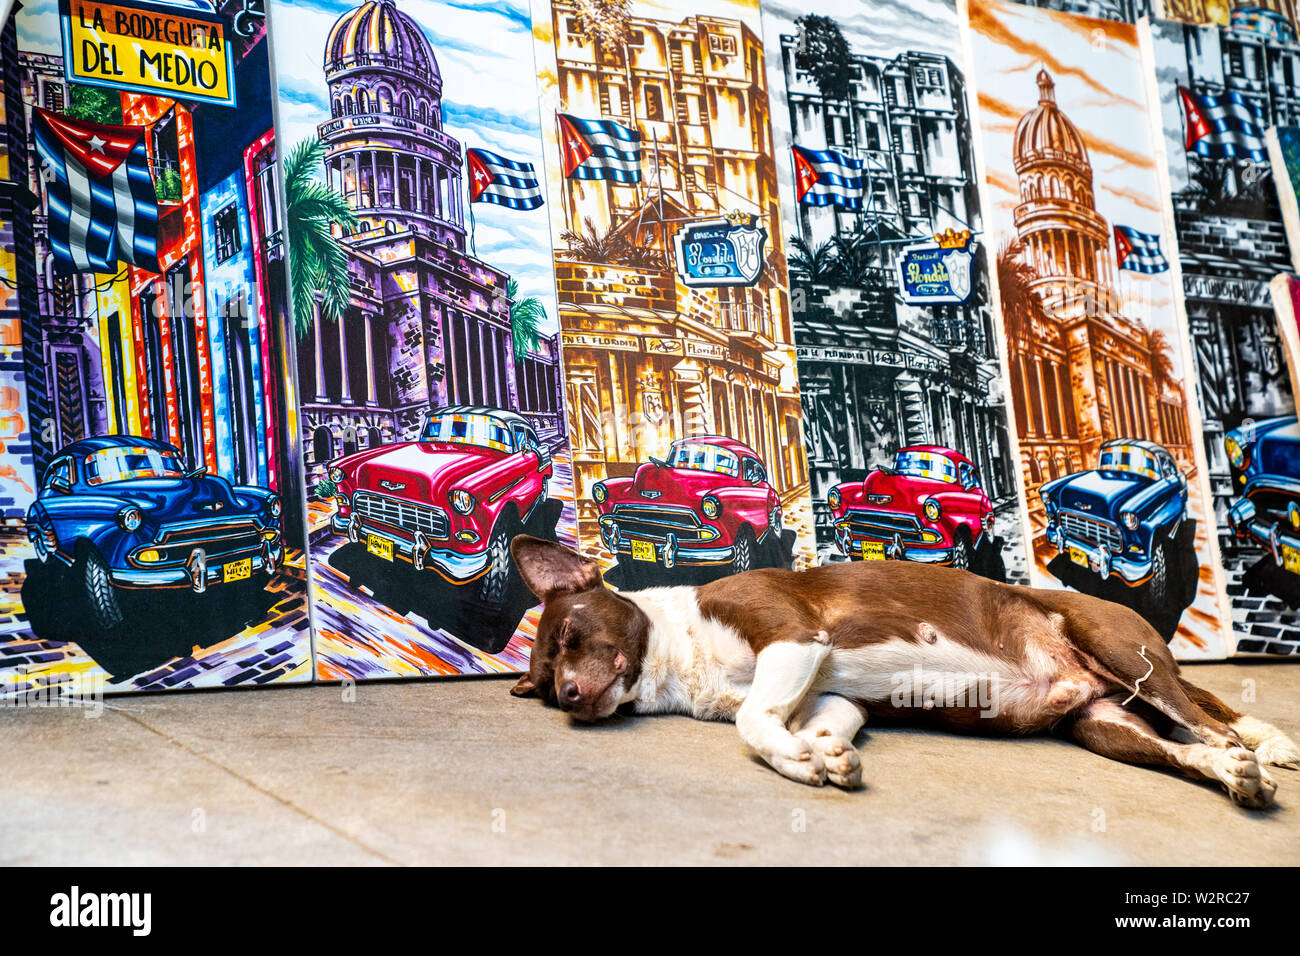 Plaza de la Catedral, La Havane, Cuba - 2 janvier 2019 : un chien cubains se repose près de belles peintures sur toile d'artistes cubains. Banque D'Images